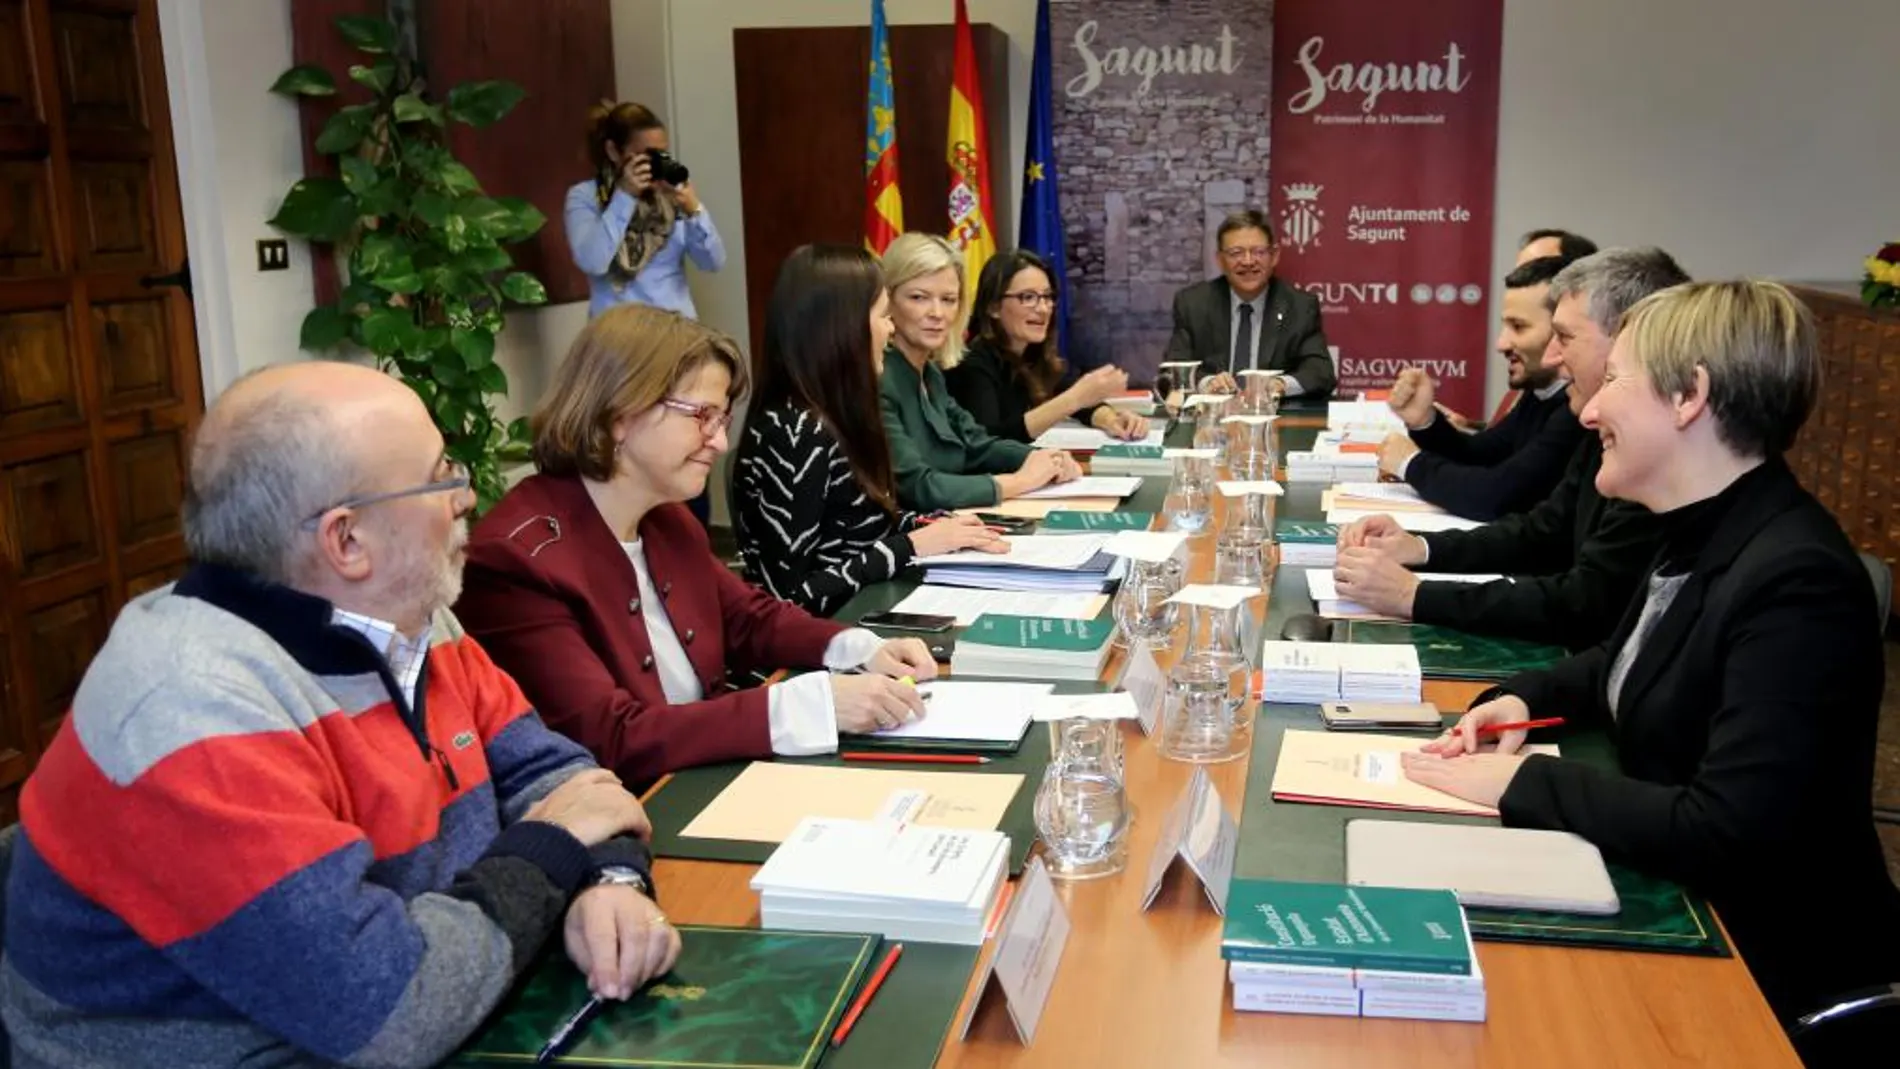 El pleno del Consell, reunido ayer en Sagunt, aprobó el decreto de Plurilingüismo de Marzà